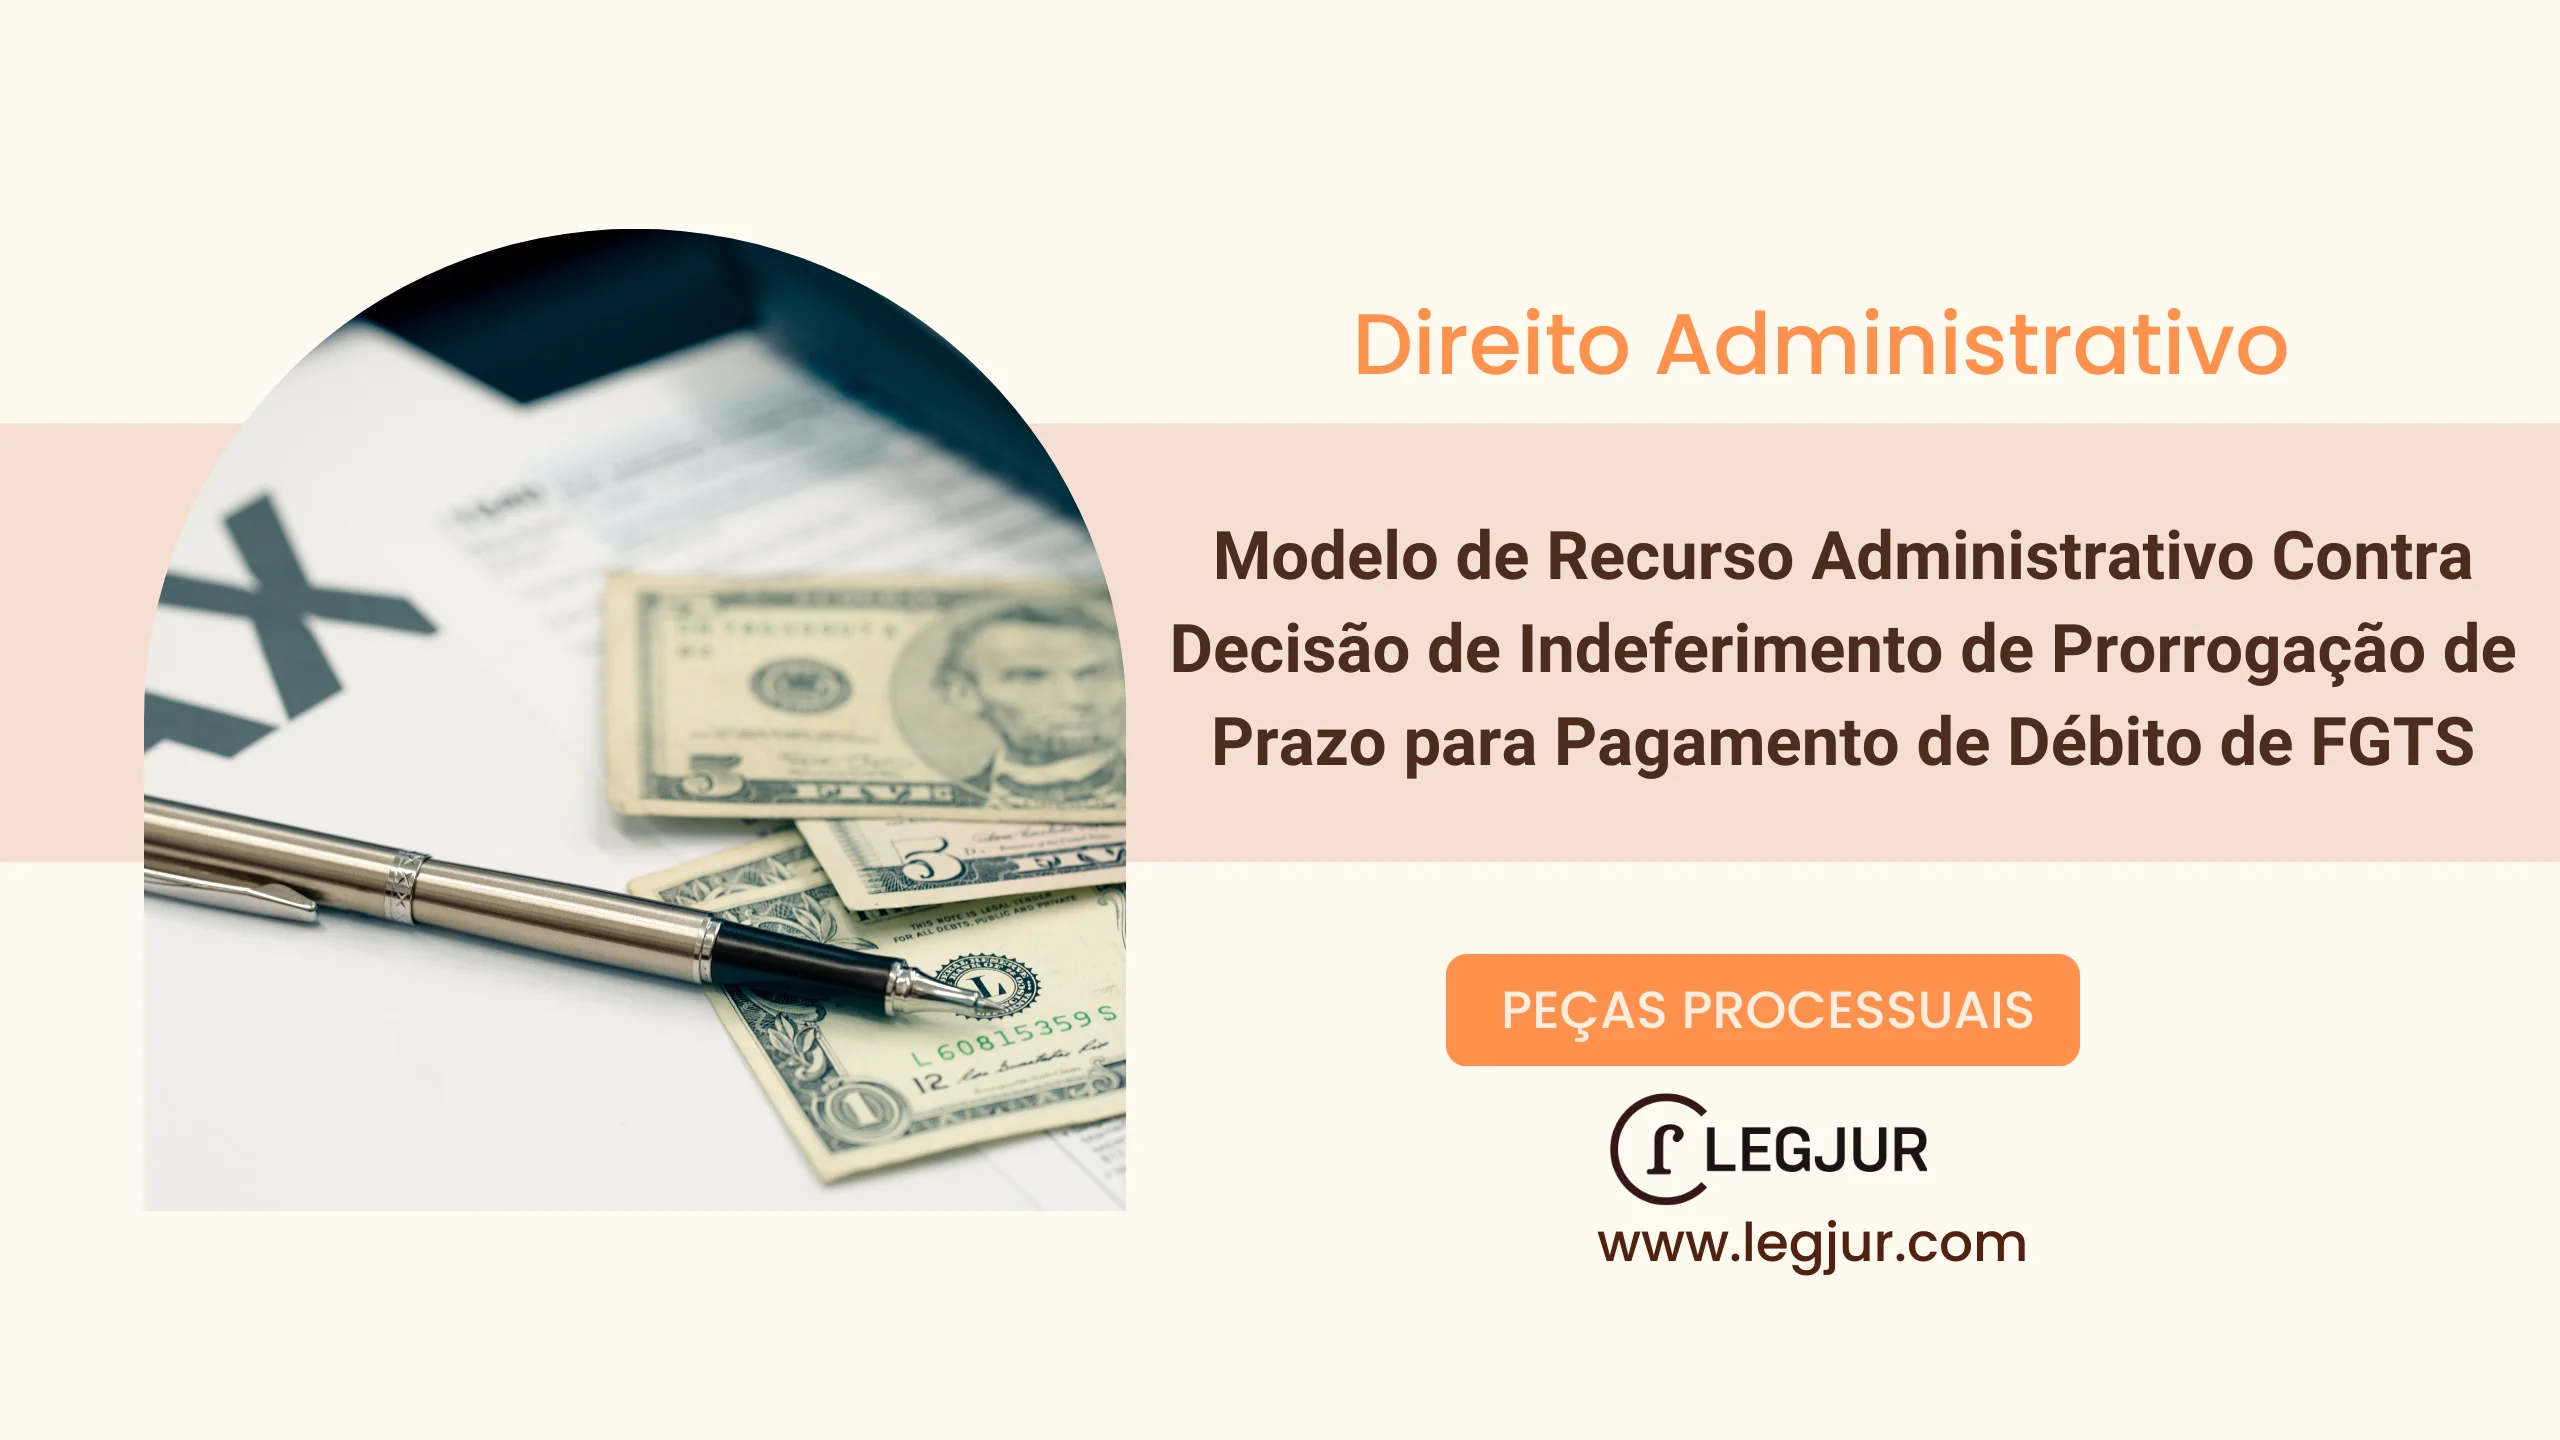 Modelo de Recurso Administrativo Contra Decisão de Indeferimento de Prorrogação de Prazo para Pagamento de Débito de FGTS